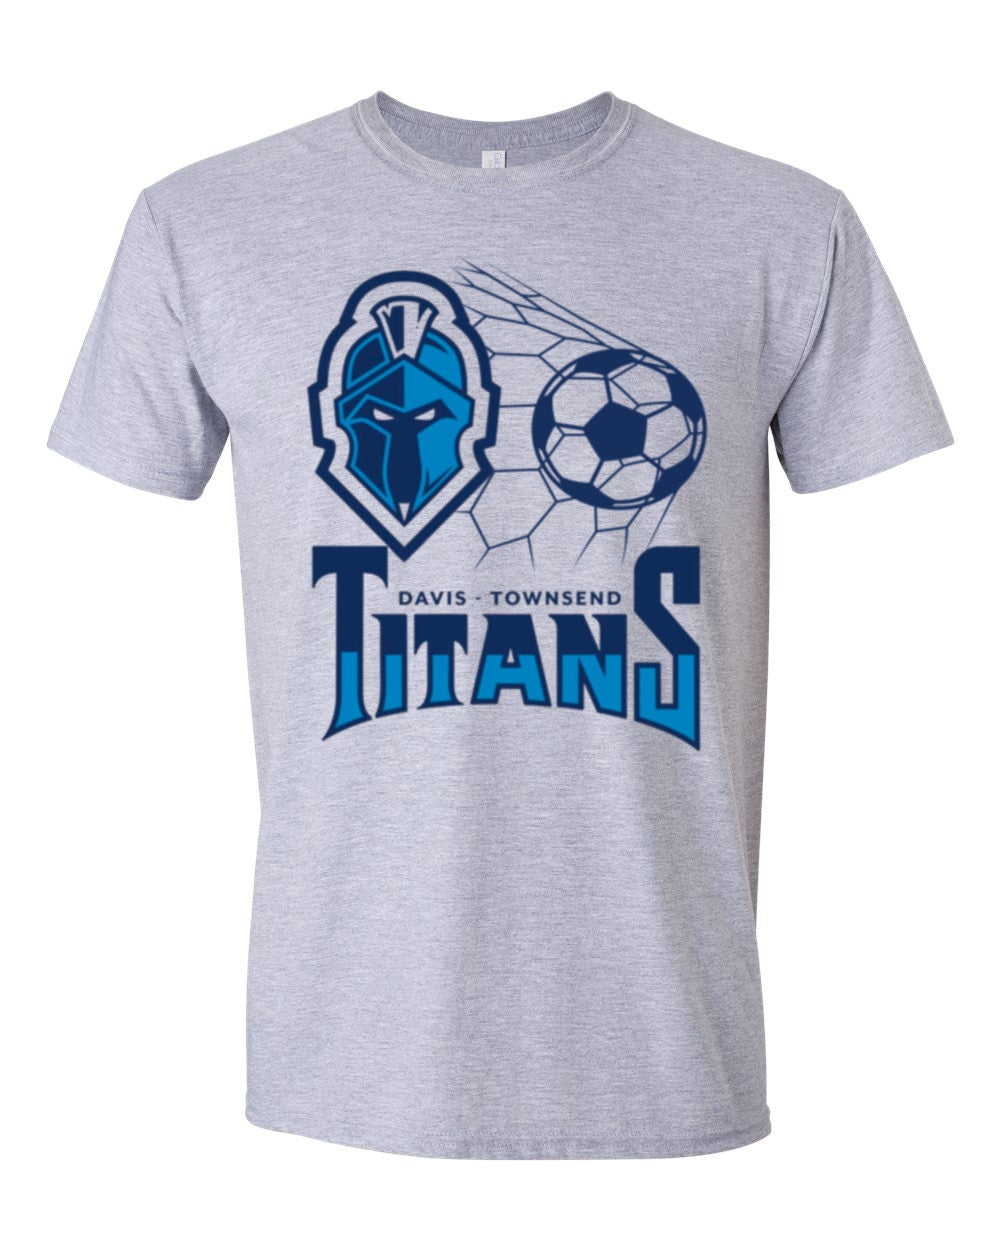 DT Titans Soccer